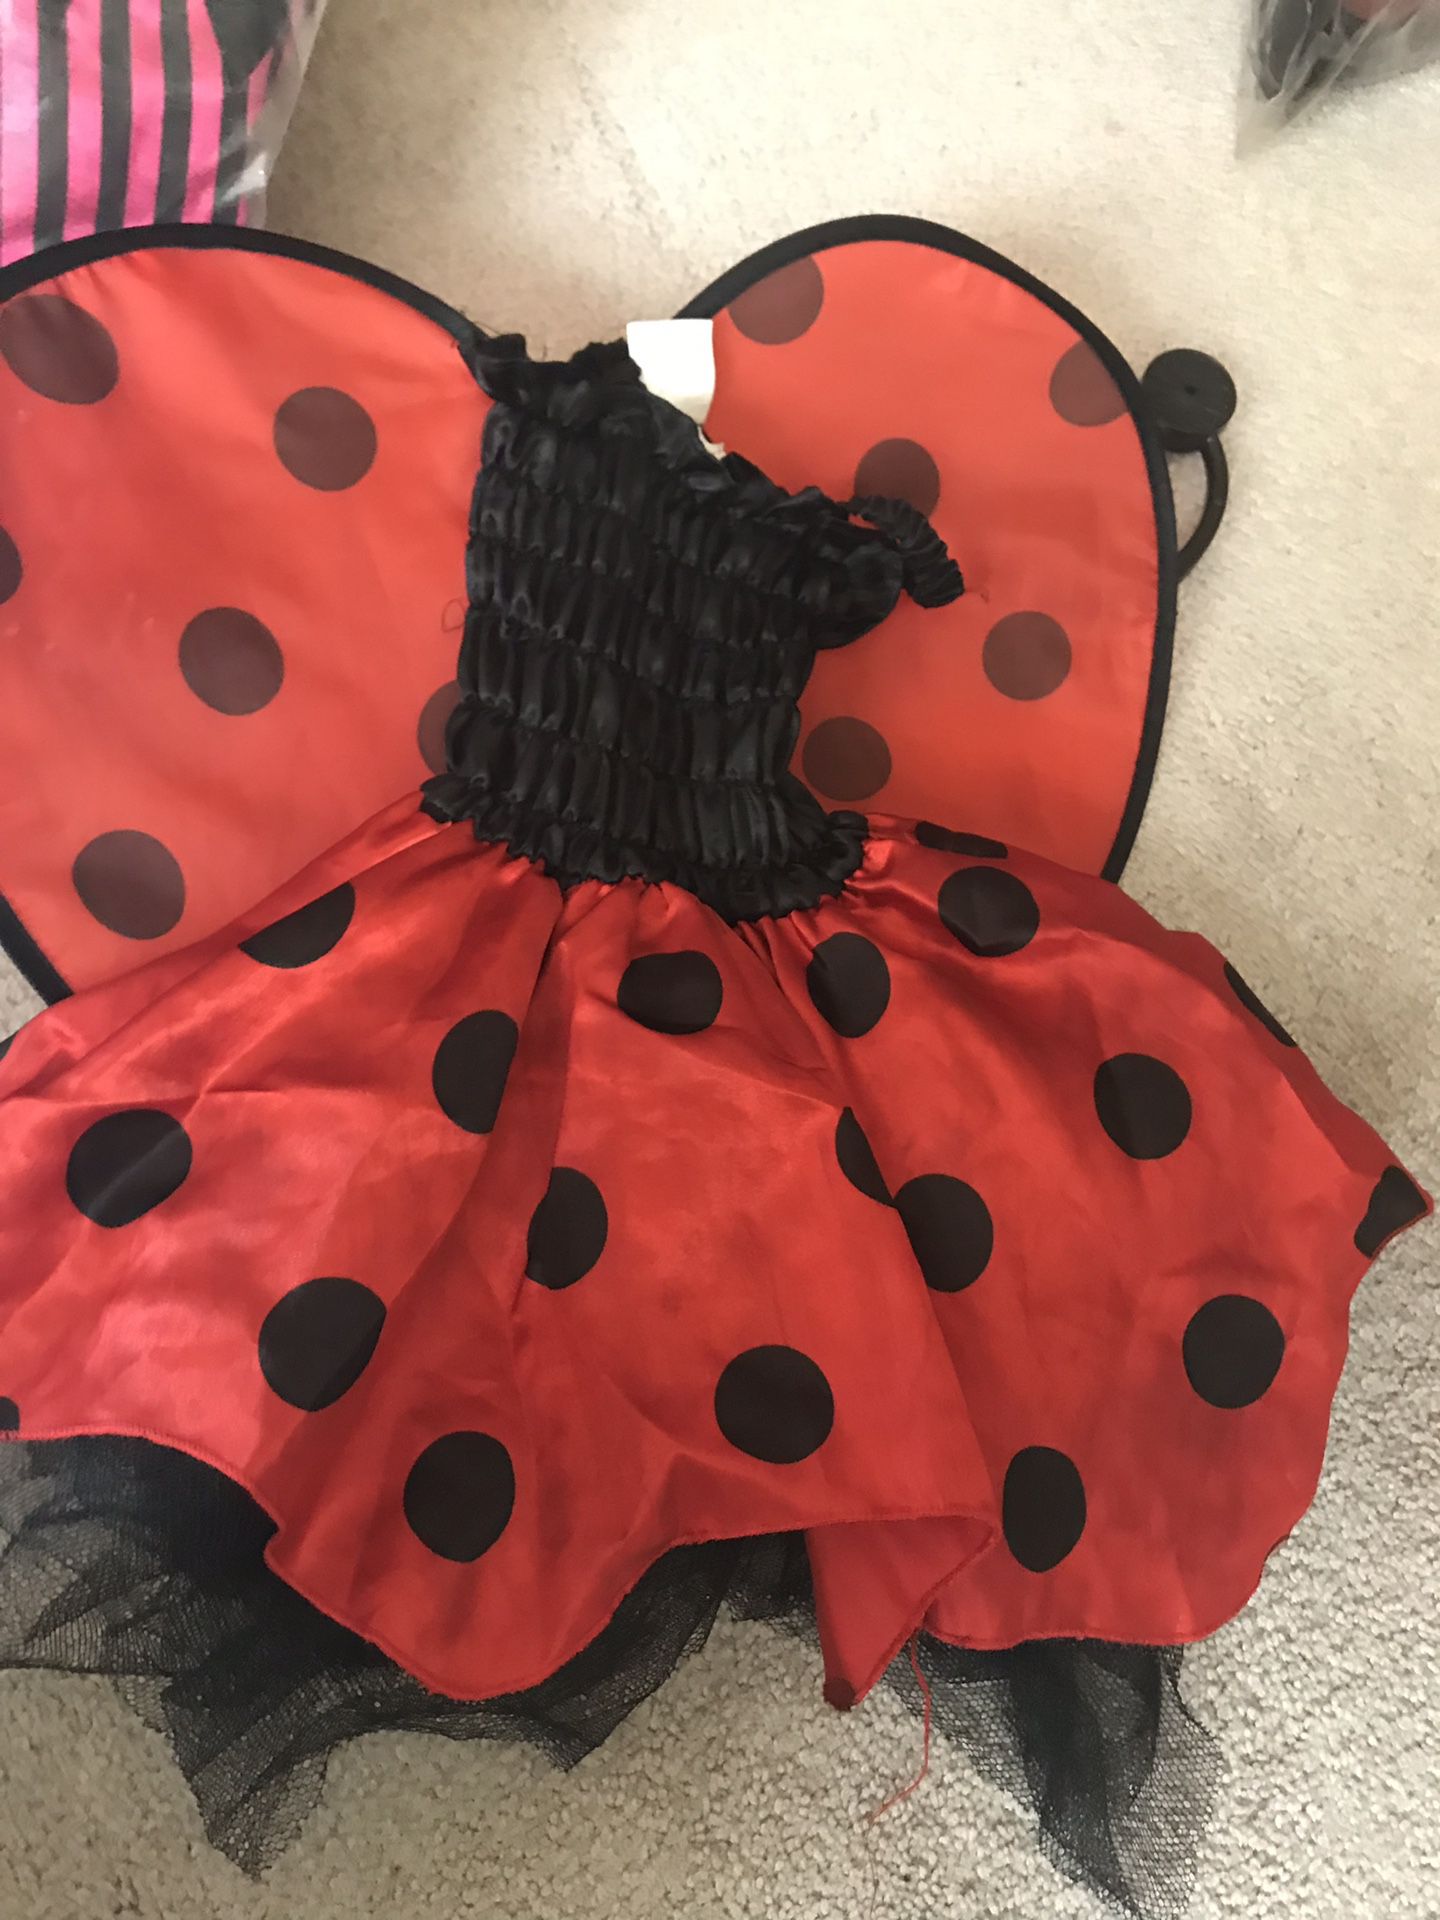 Lady bug infant costume.